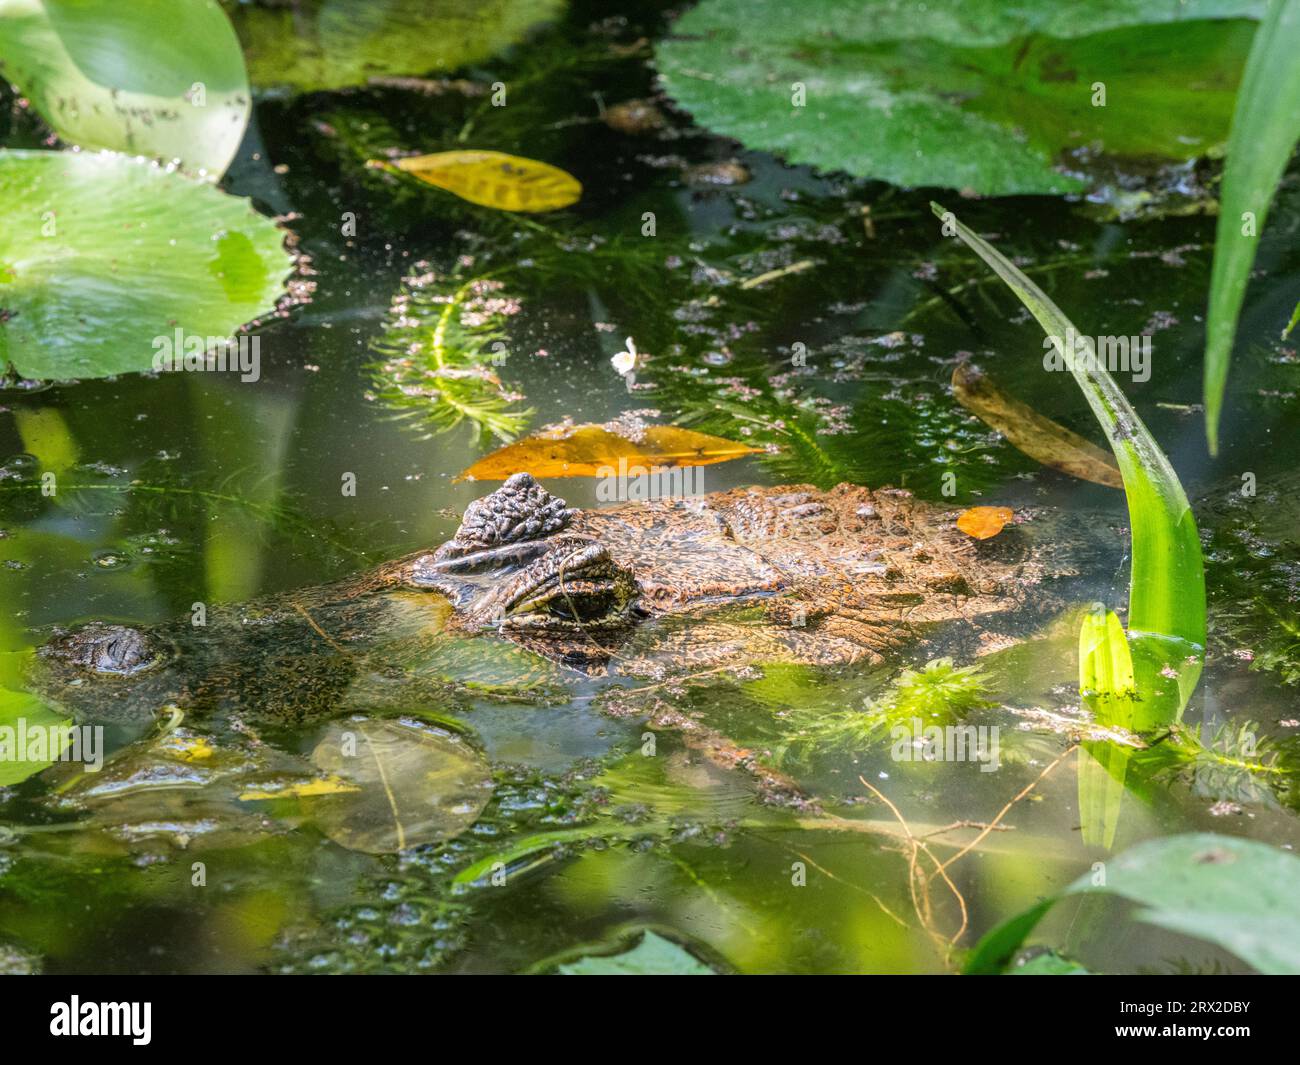 Un caïman adulte (Caiman crocodilus) dans un étang d'eau douce pendant la journée, Rio Seco, Costa Rica, Amérique centrale Banque D'Images